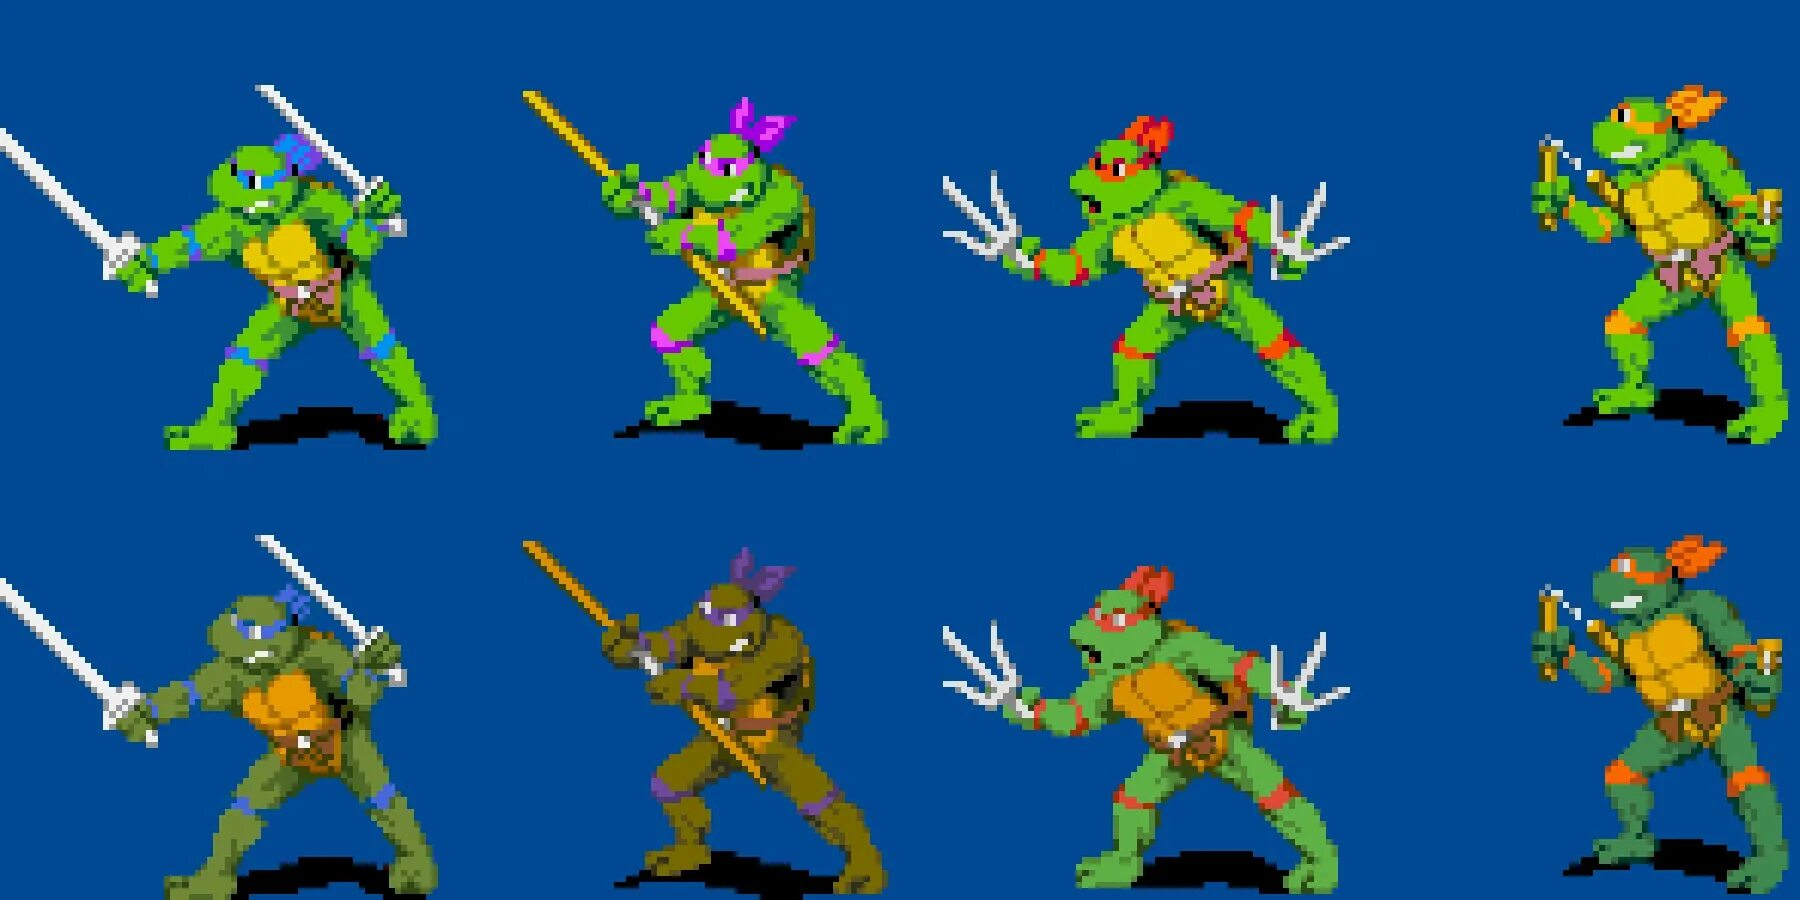 Teenage Mutant Ninja Turtles Snes. Teenage Mutant Ninja Turtles: the Cowabunga. Teenage Mutant Ninja Turtles: the Cowabunga collection. Teenage Mutant Ninja Turtles the Cowabunga collection TMNT. Tmnt collection